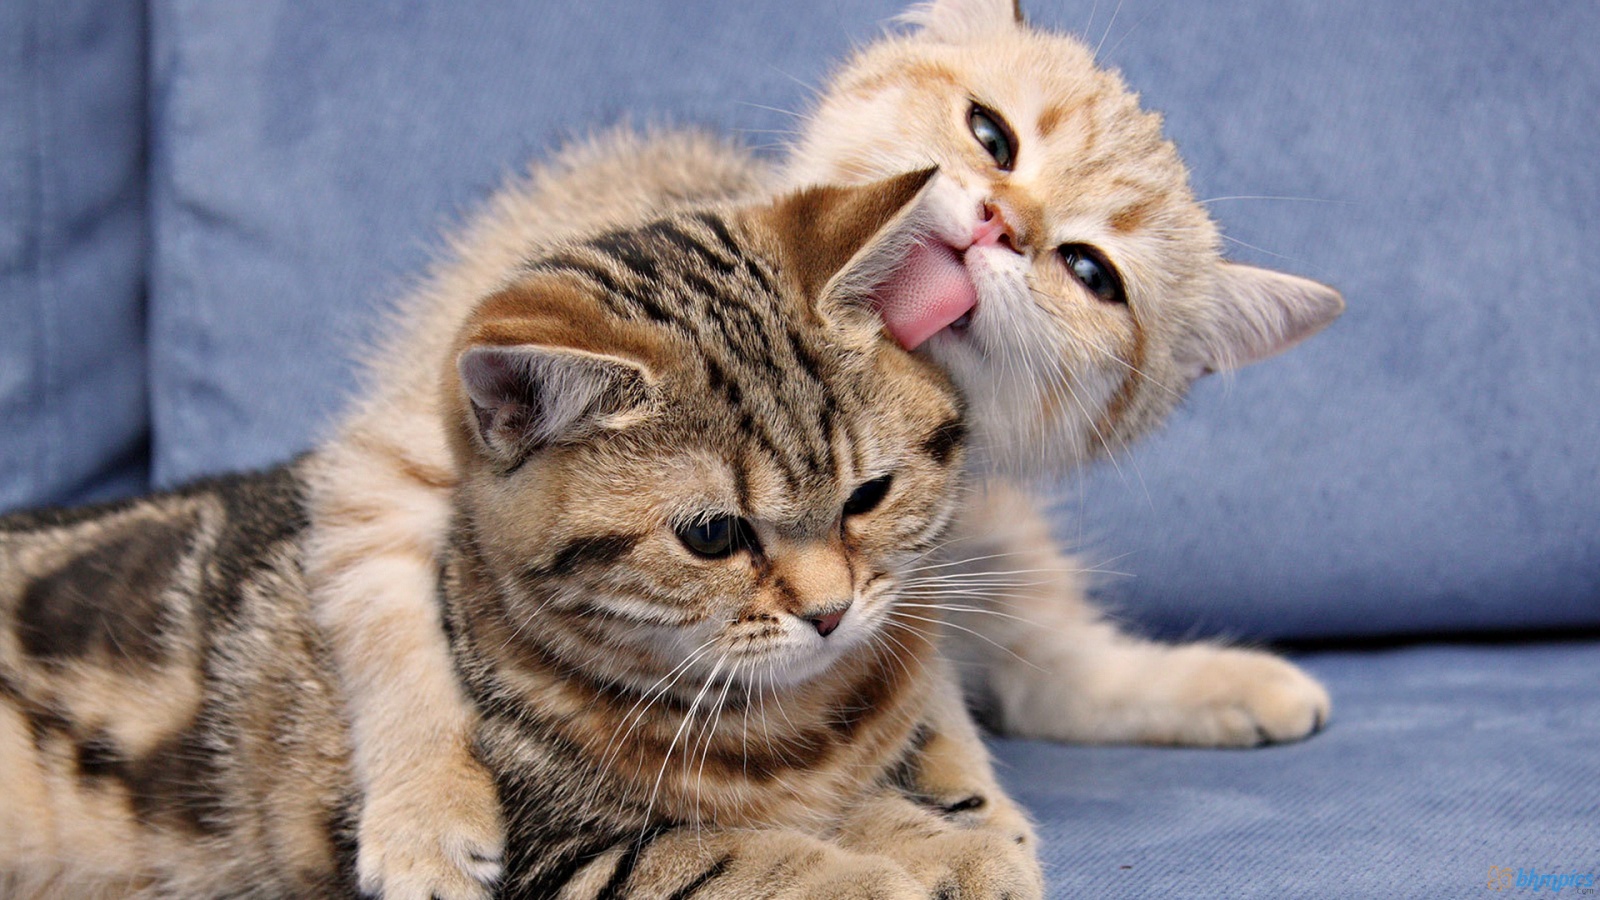 Funny Love Cats Wallpaper Free Desktop | I HD Images